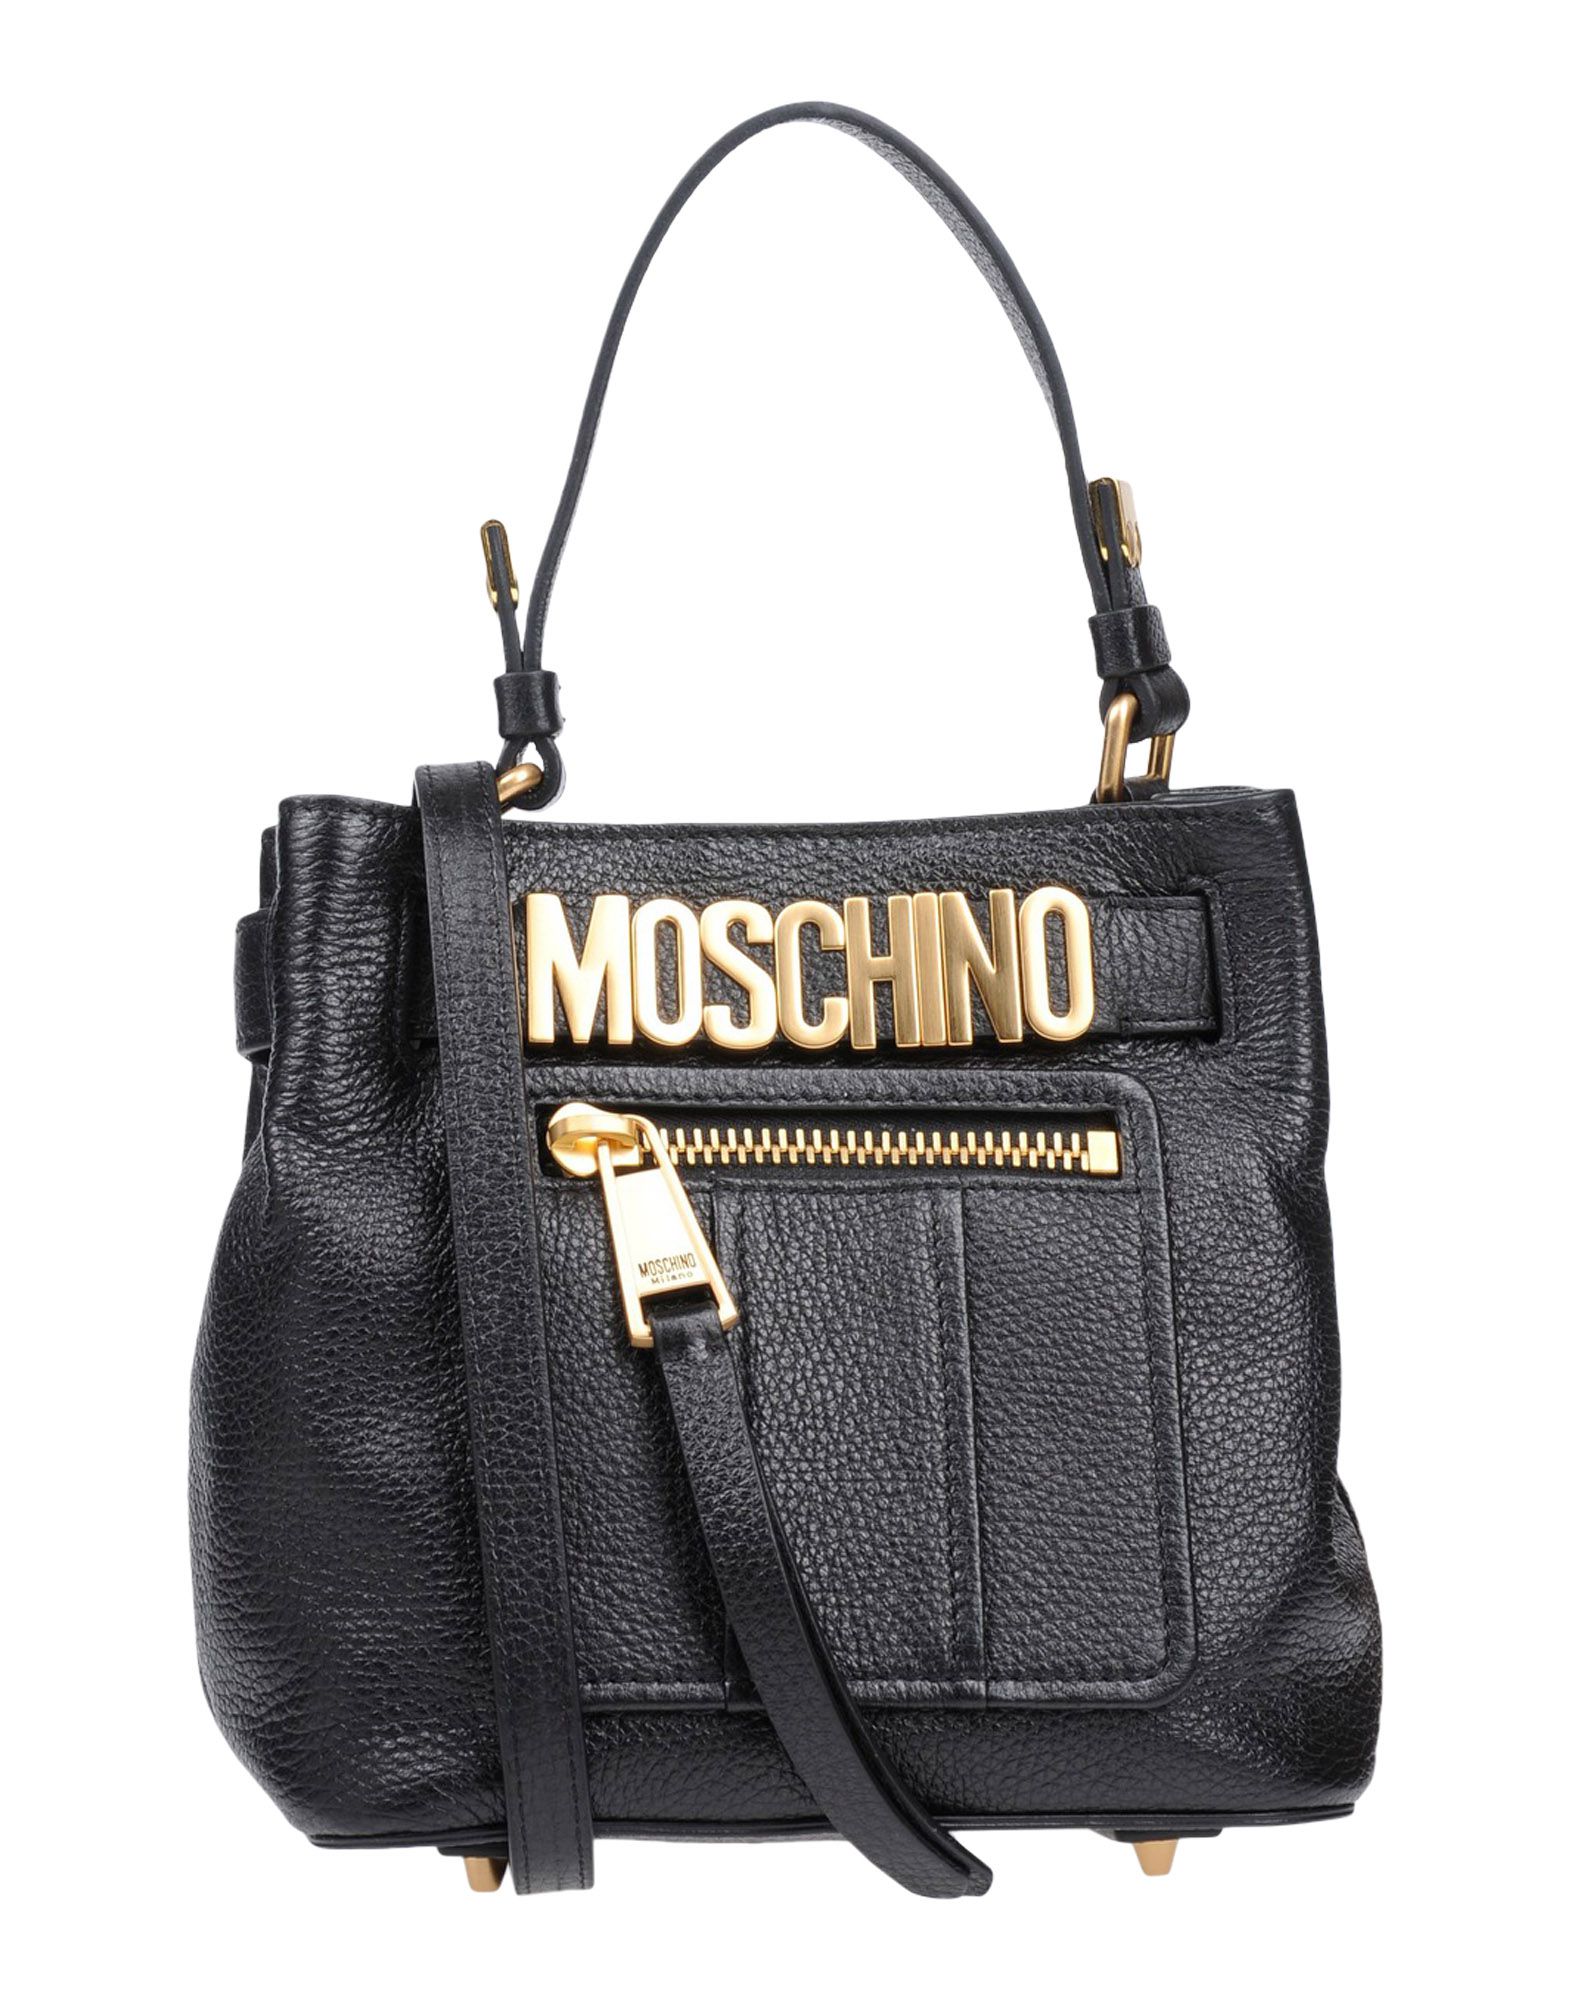 MOSCHINO Handbag,45399269WU 1